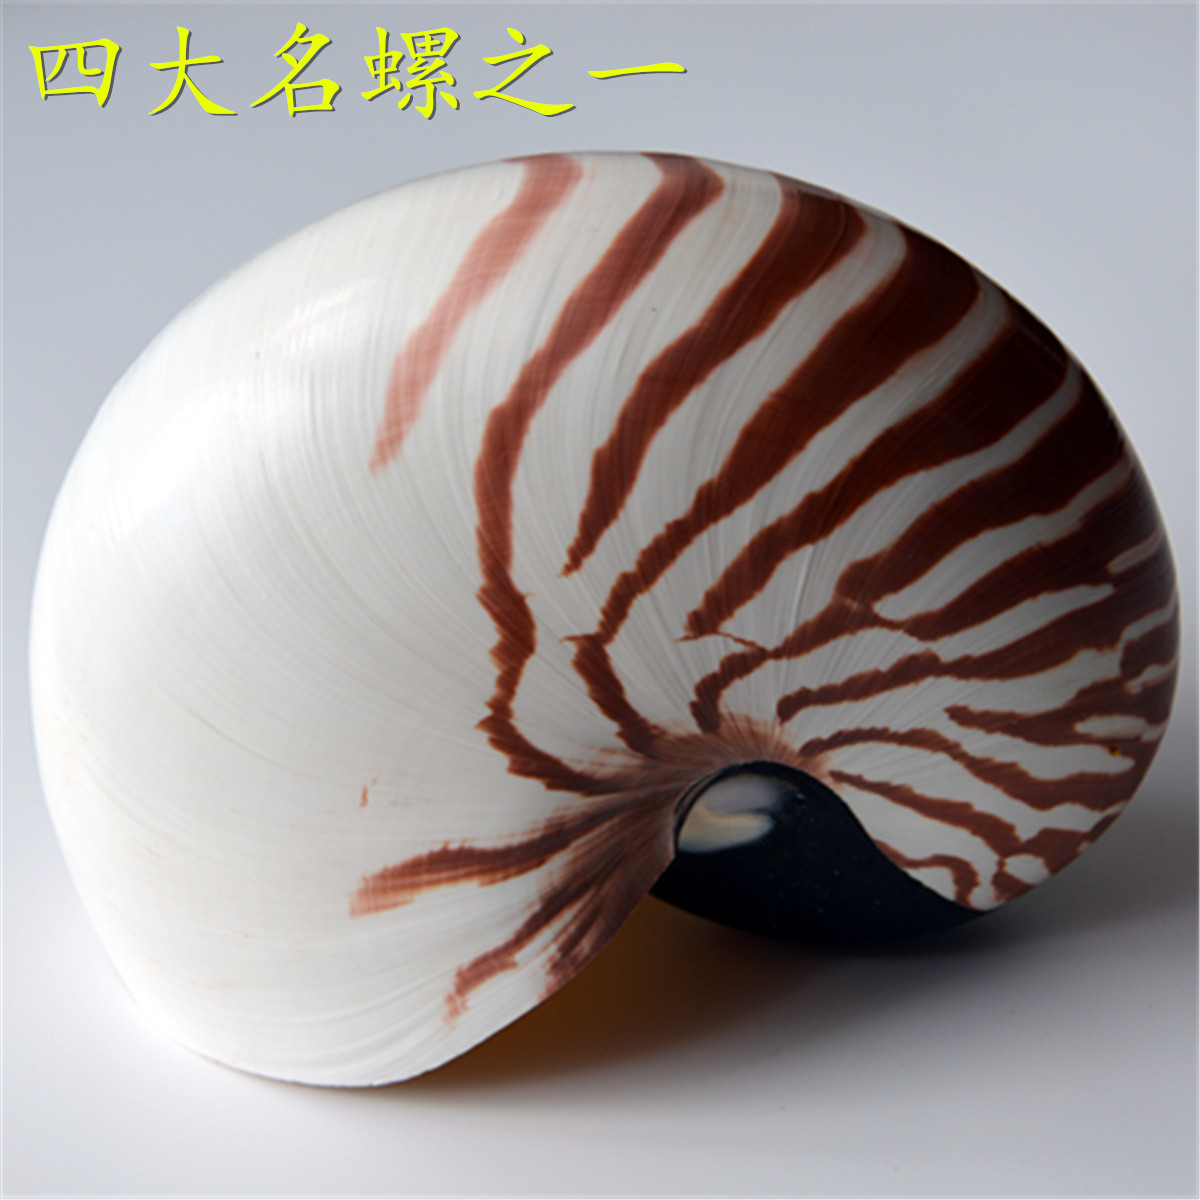 包邮海螺贝壳四大名螺之一摆件家居创意饰品收藏地中海装饰工艺品